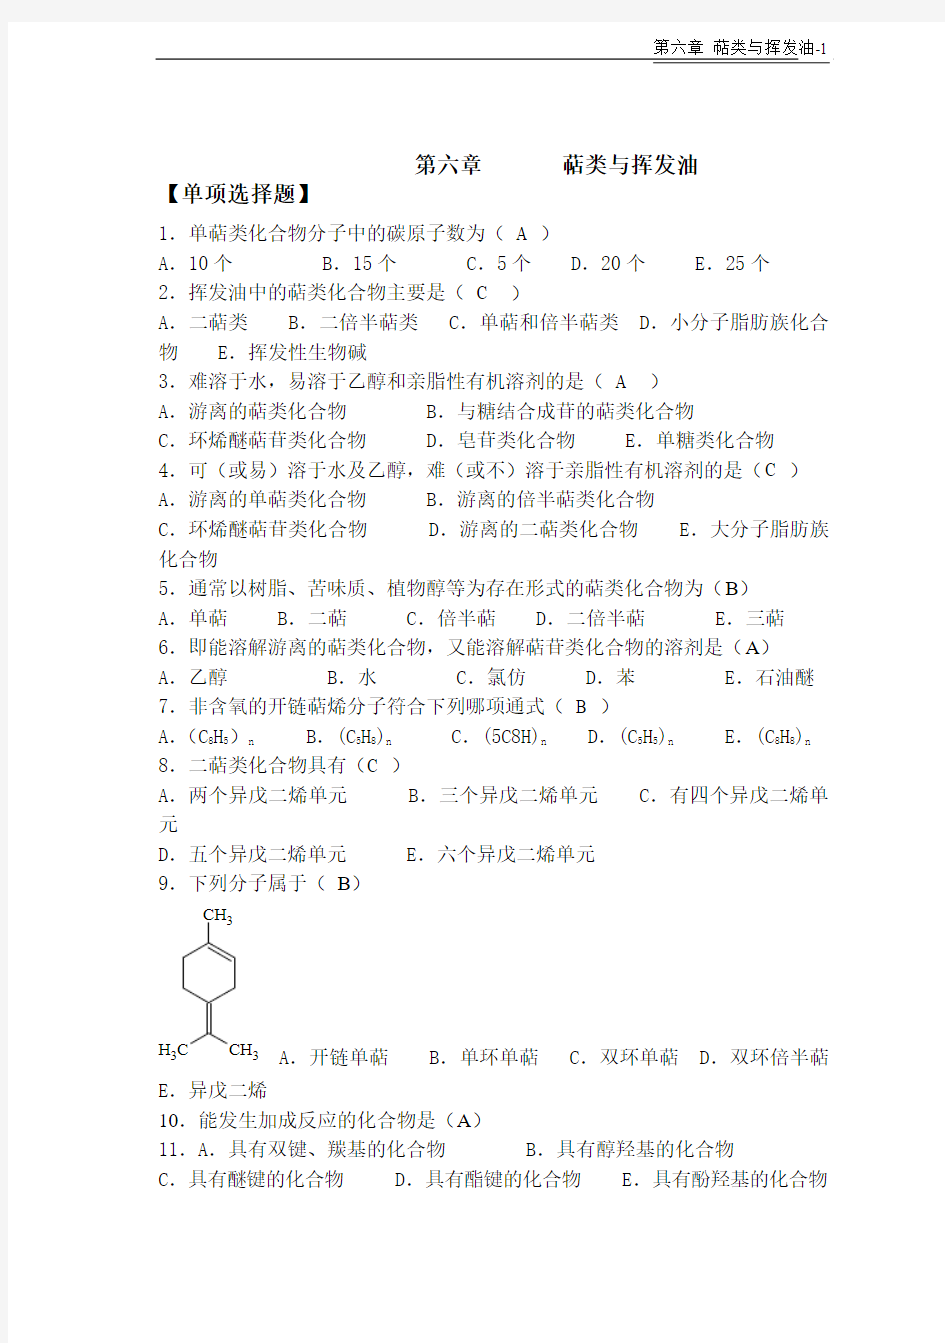 天然药物化学-第6章萜类与挥发油-20101026完美修正版